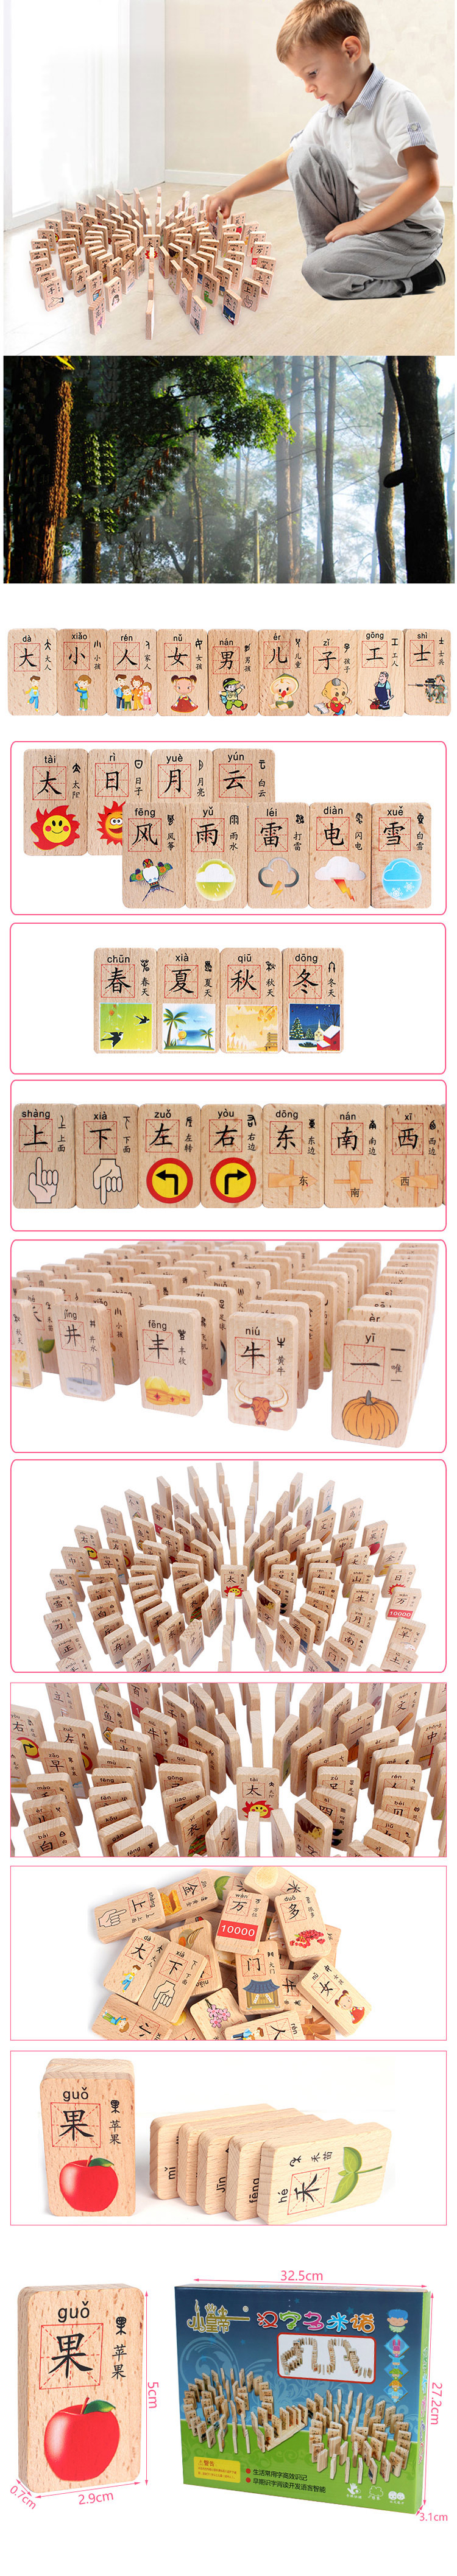 小皇帝 识字多米诺 骨牌 积木100片汉字榉木木制儿童益智玩具XHD9163 。